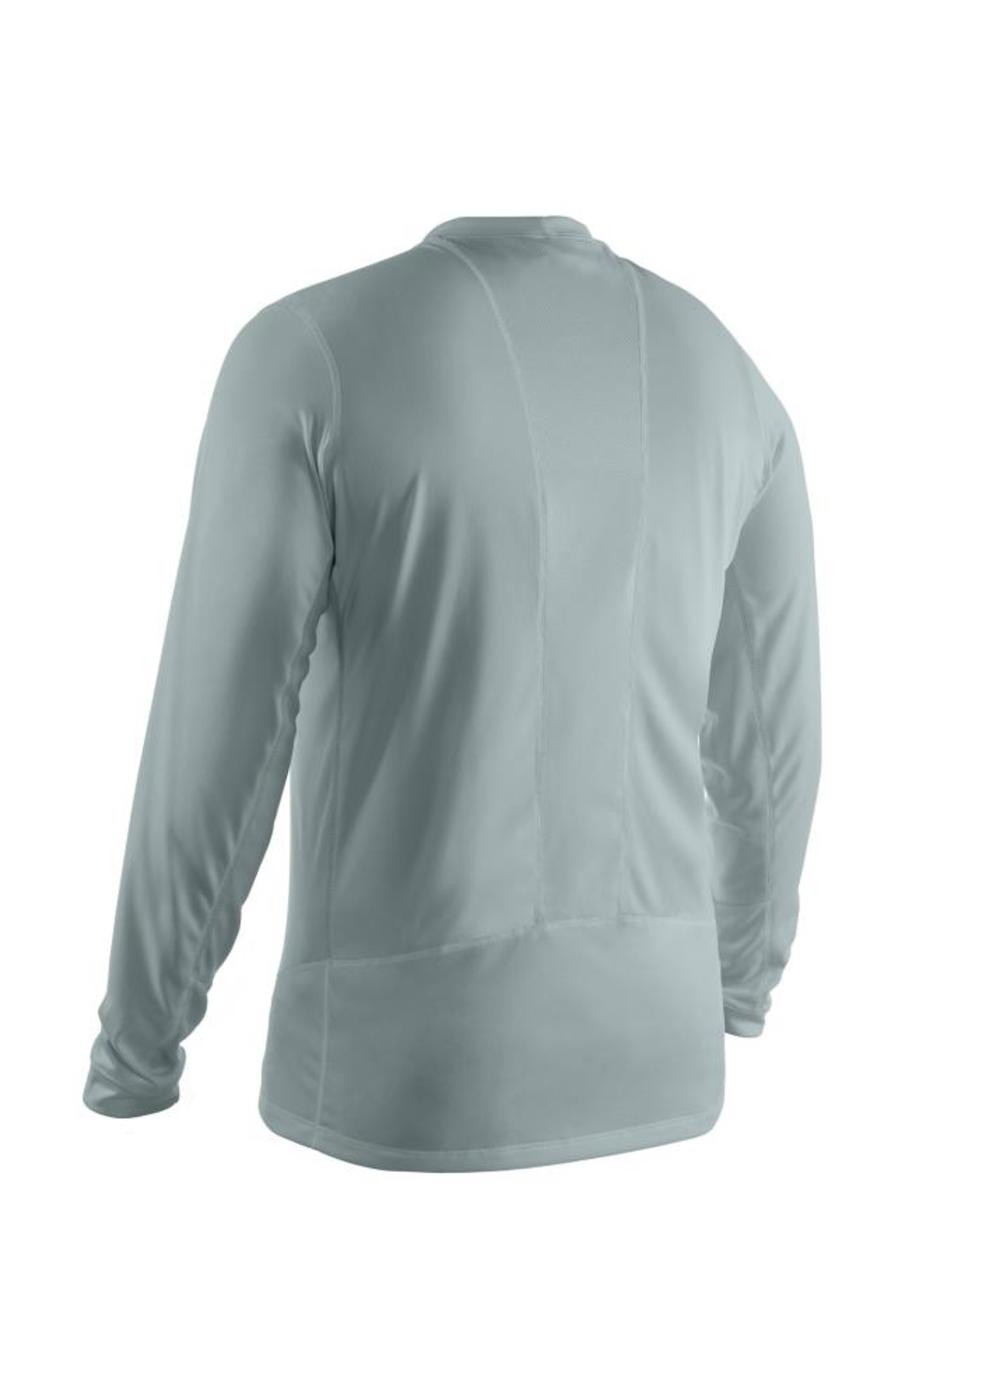 XL GRAY Milwaukee WorkSkin Light Weight Performance Long Sleeve Shirt